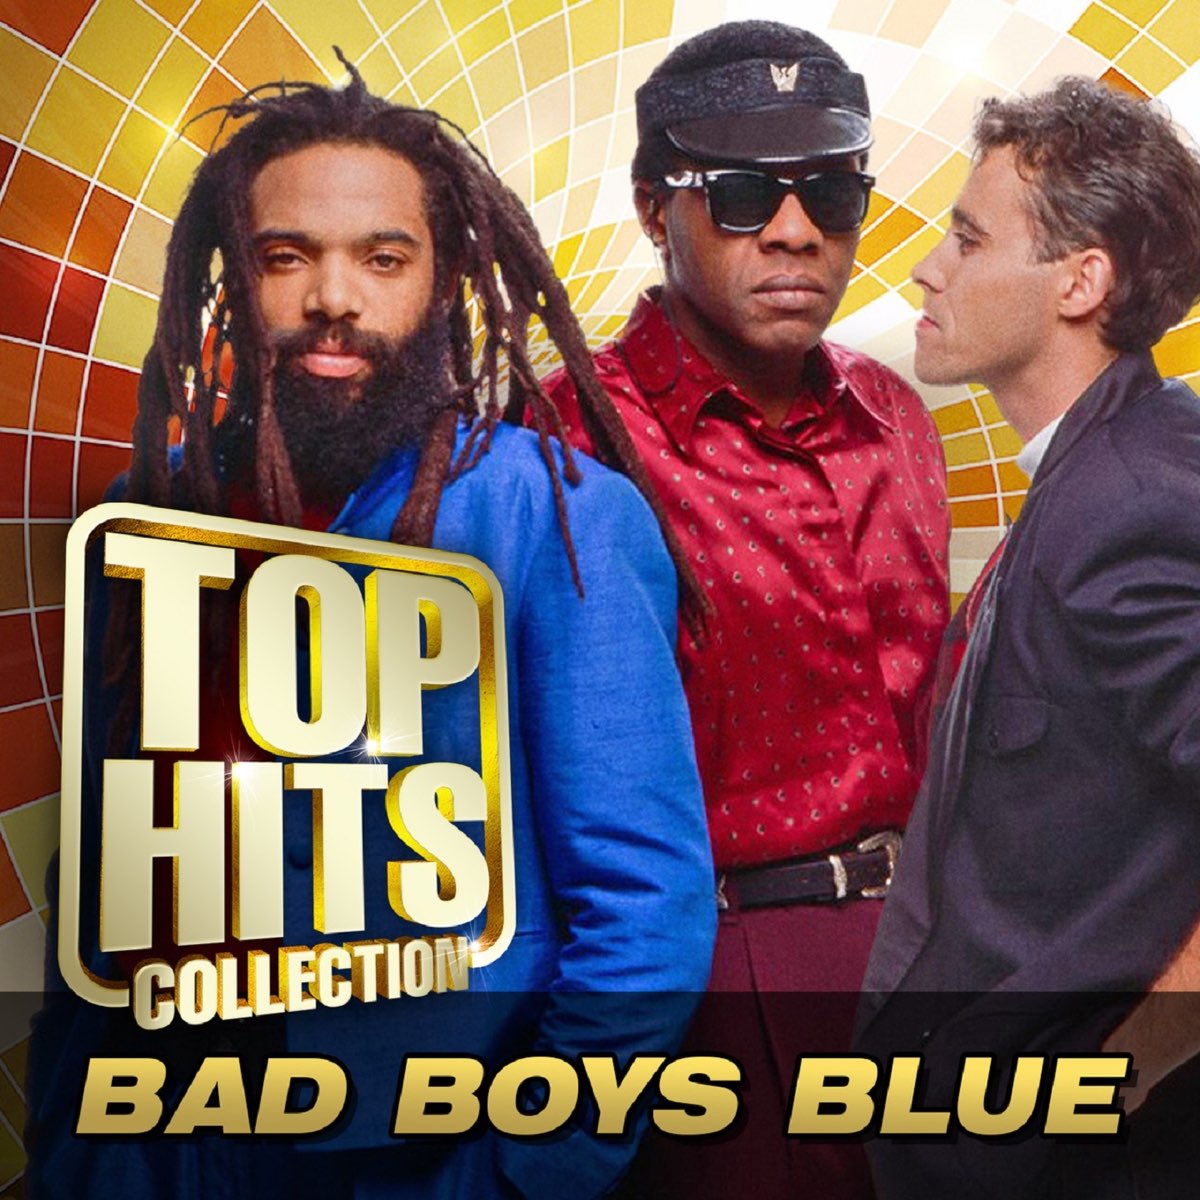 Boys мп3. Группа Bad boys Blue. Фото группы бэд бойс Блю. Бед бойс Блю хит коллекция. Bad boys Blue обложка.